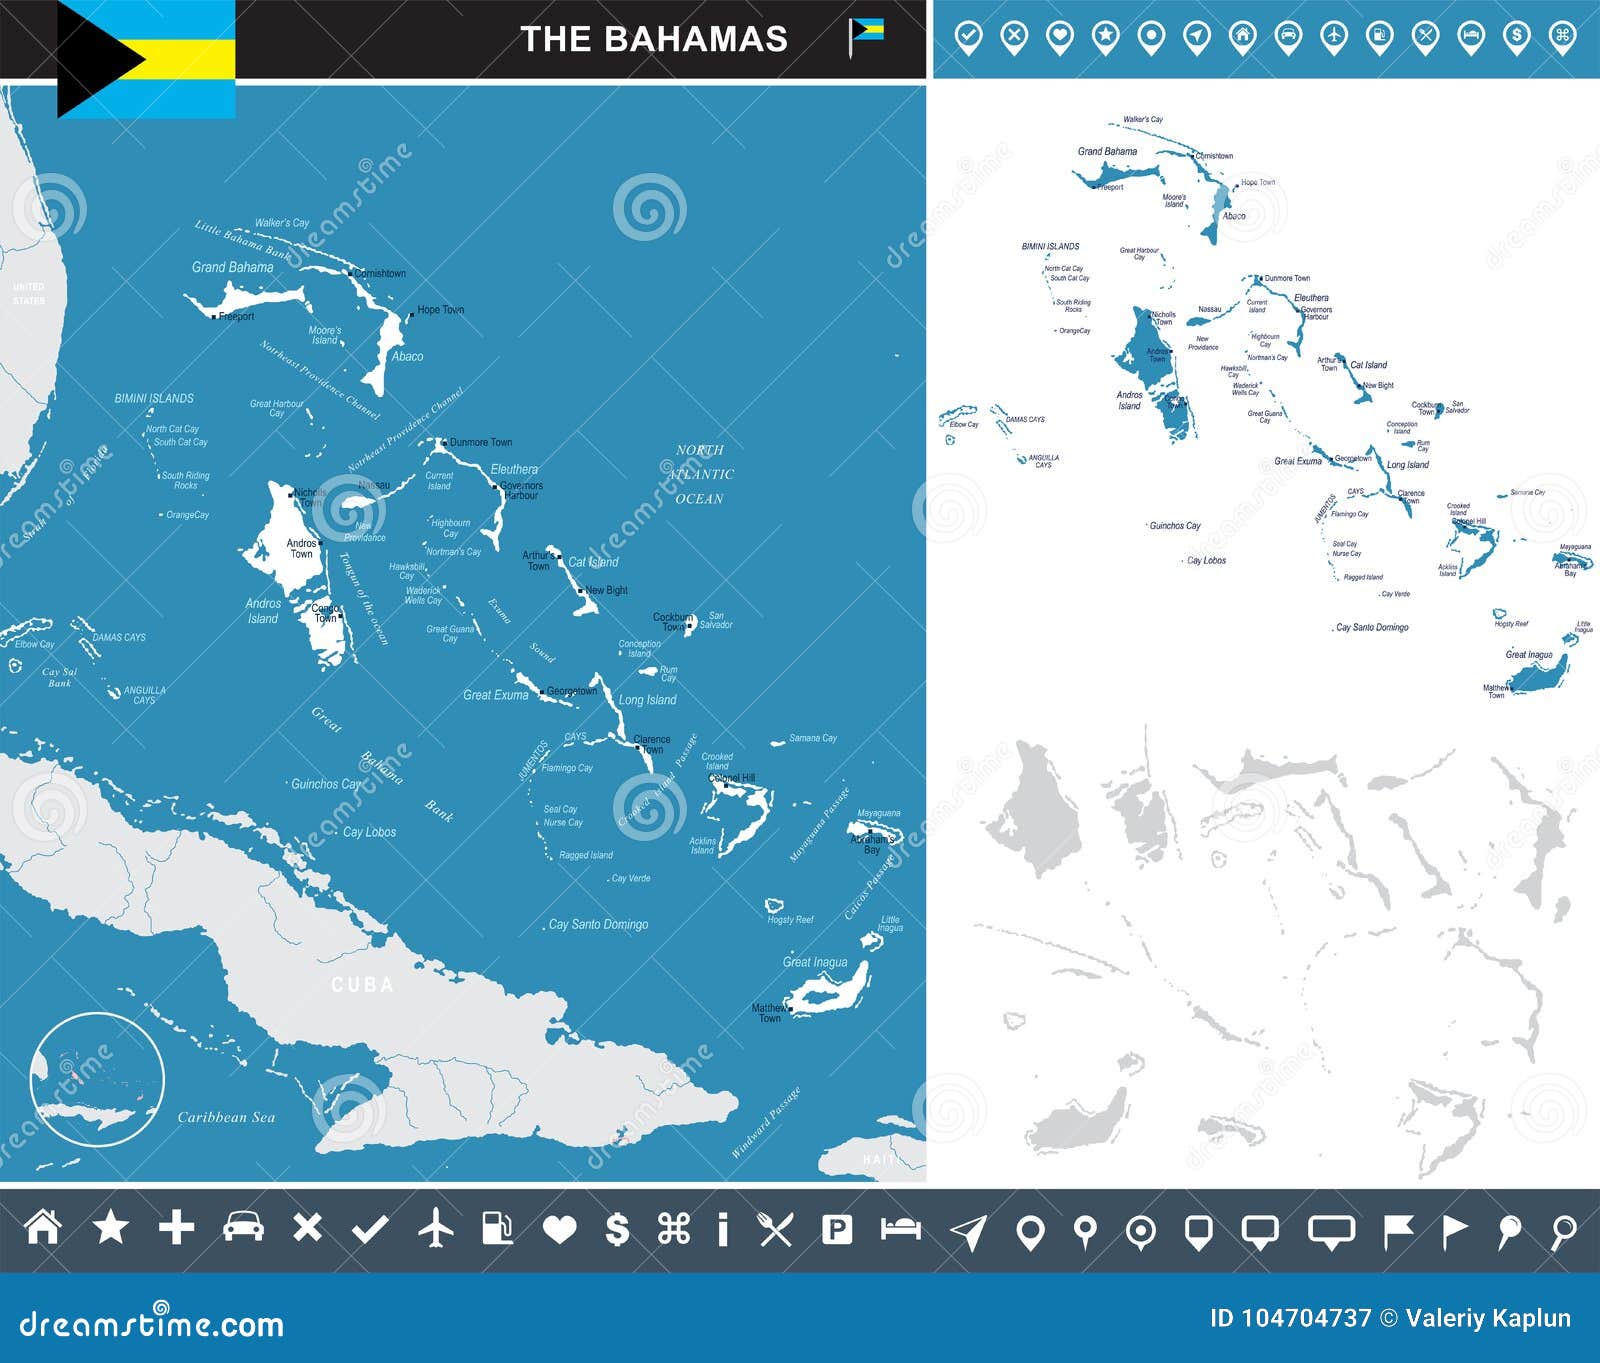 巴哈马行政区域图_巴哈马地图查询